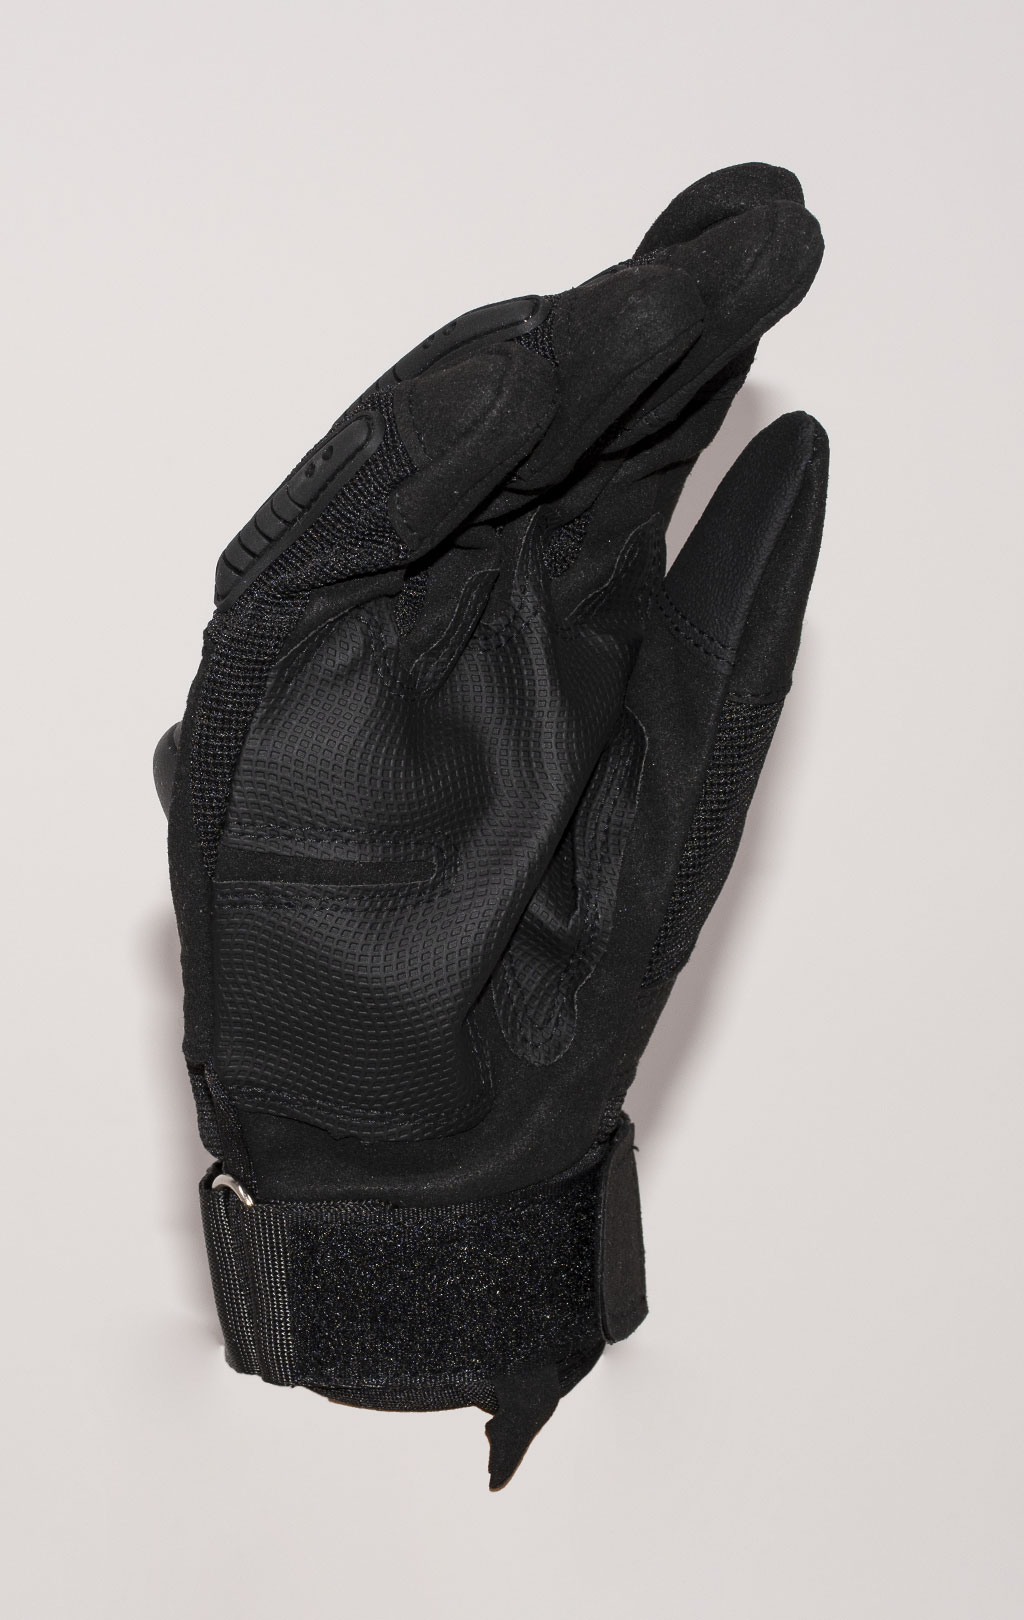 Перчатки микрофибра с защитой black GL-711 Китай